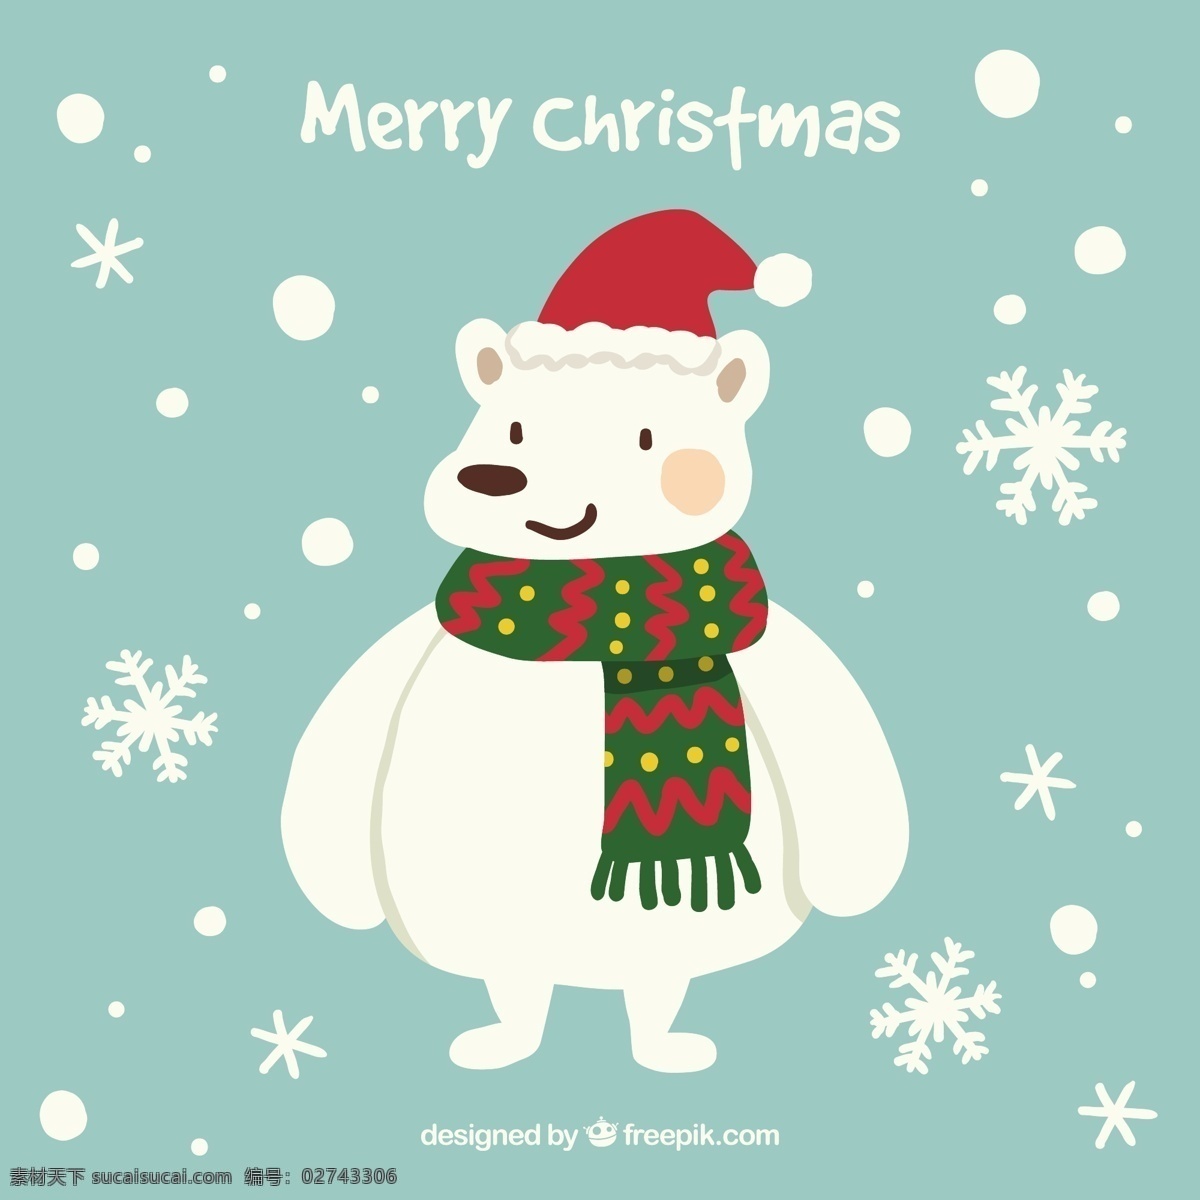 圣诞熊 圣诞 派对 动物 卡通 冬季 熊 帽子 雪花 节日 寒冷 围巾 圣诞帽 圣诞晚会 卡通动物 派对帽 季节 北极熊 圣 青色 天蓝色